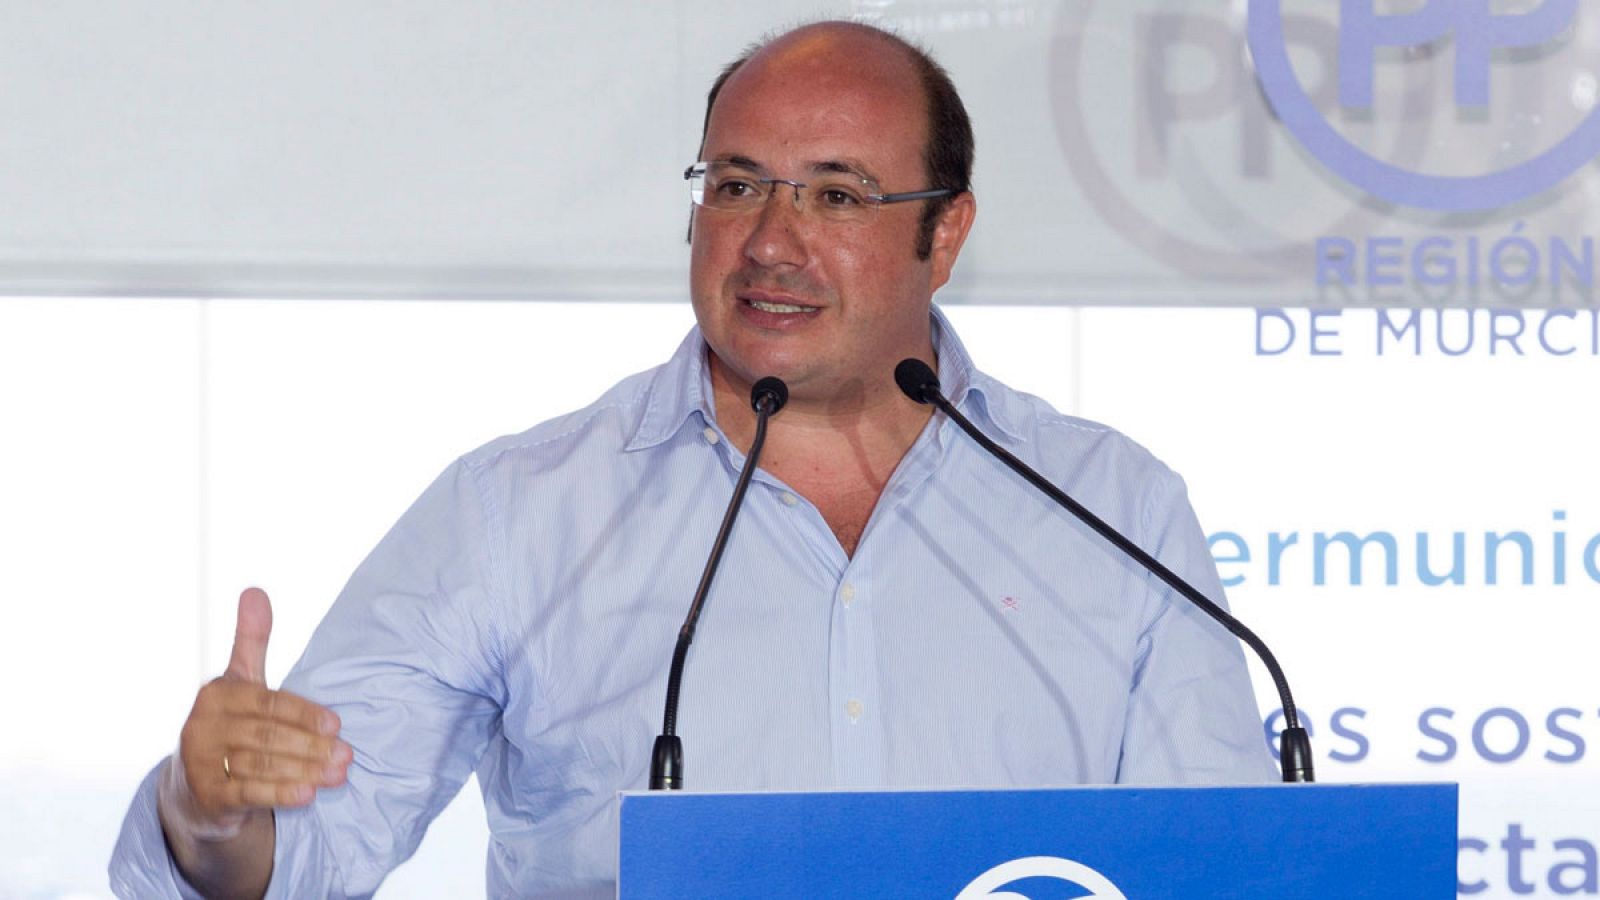 El secretario general del PP de Murcia y presidente de la región Pedro Antonio Sánchez